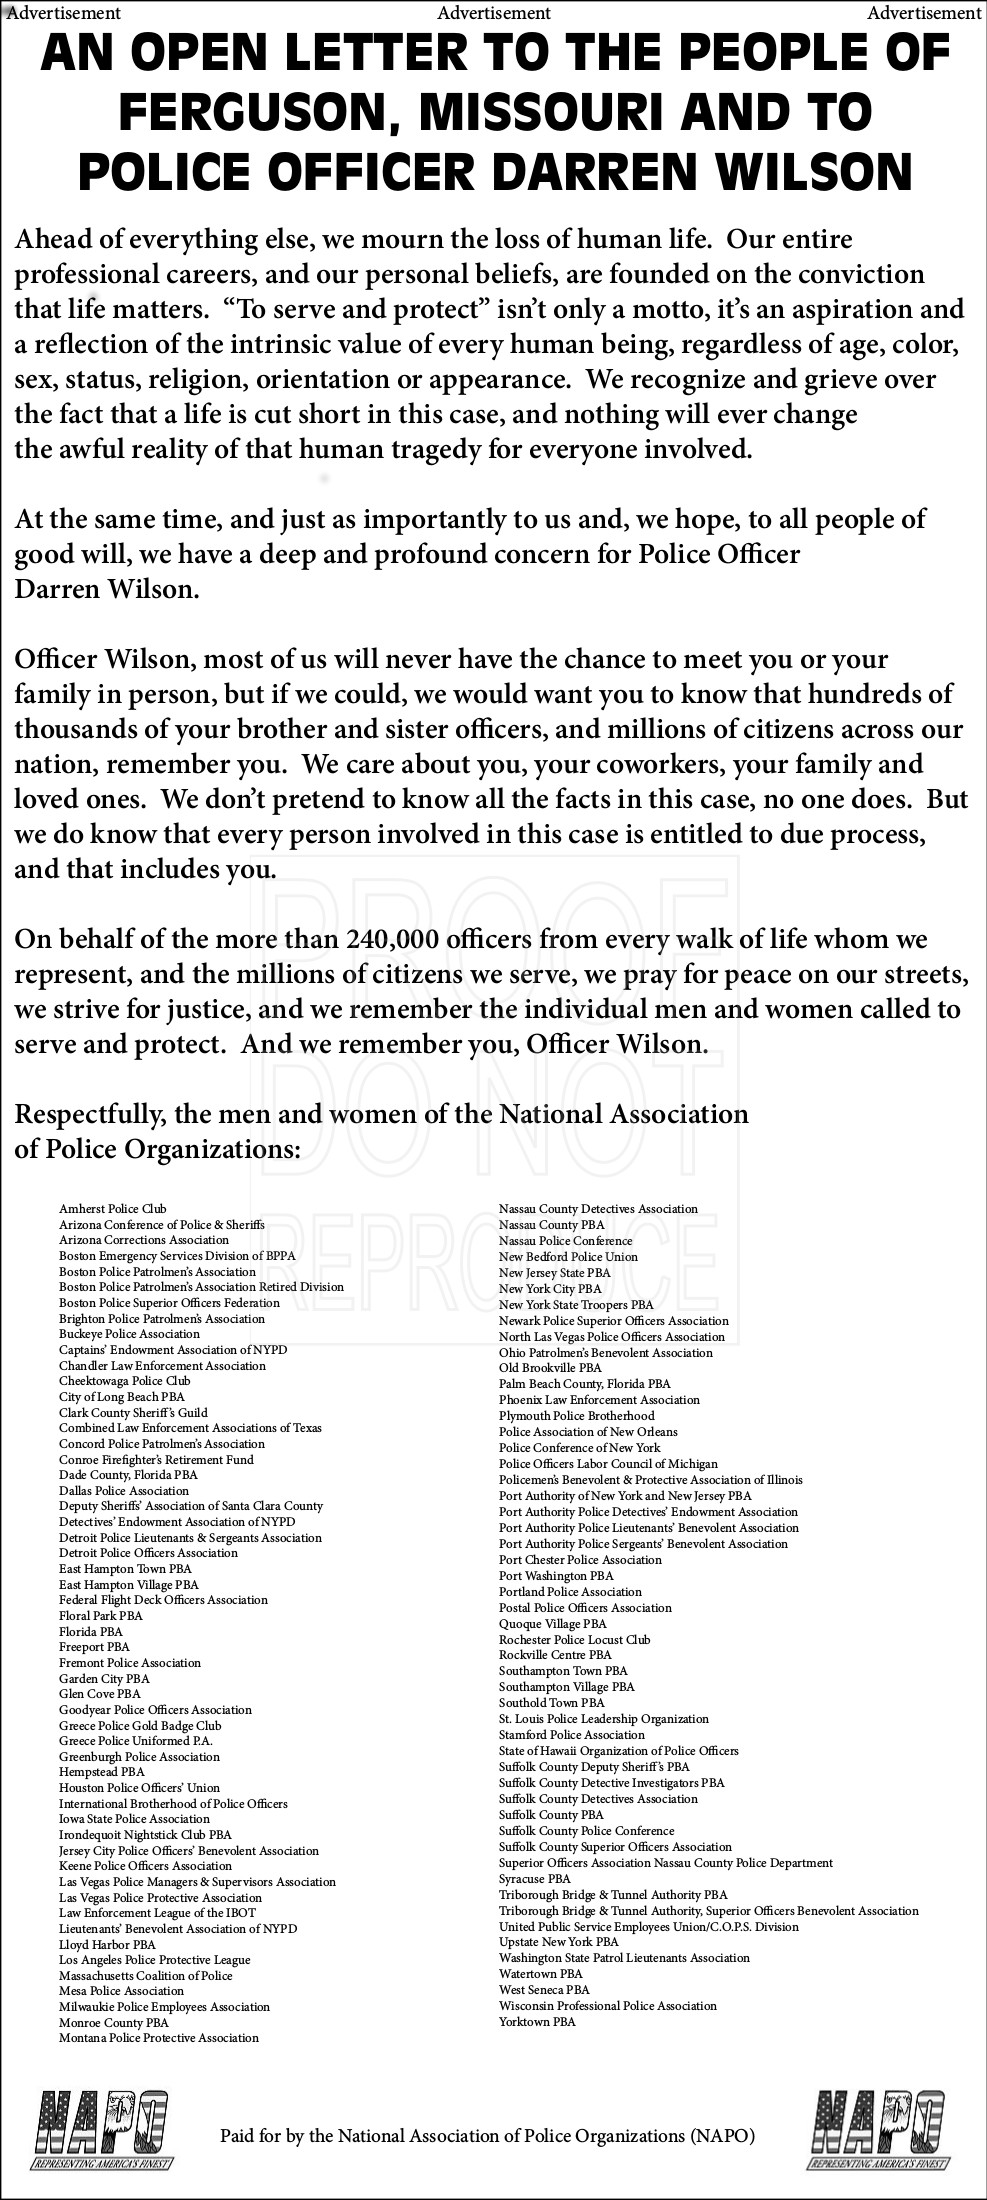 NAPO Letter of Support for Officer Darren Wilson